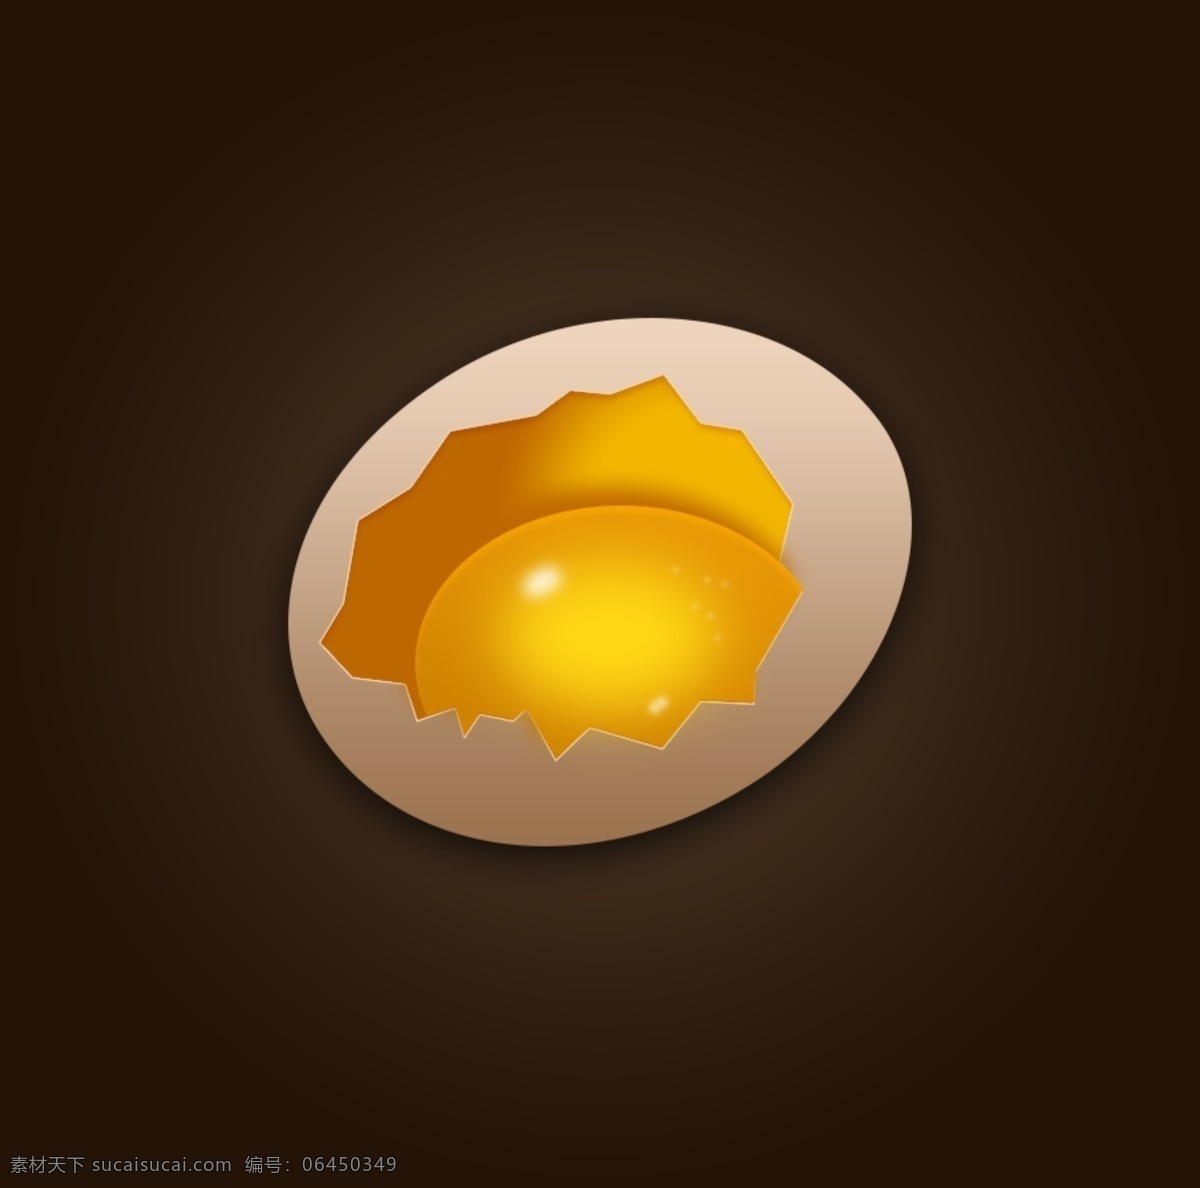 鸡蛋 图标 psd源文件 ui设计 ui素材 鸡蛋图标 ui模板下载 图标设计